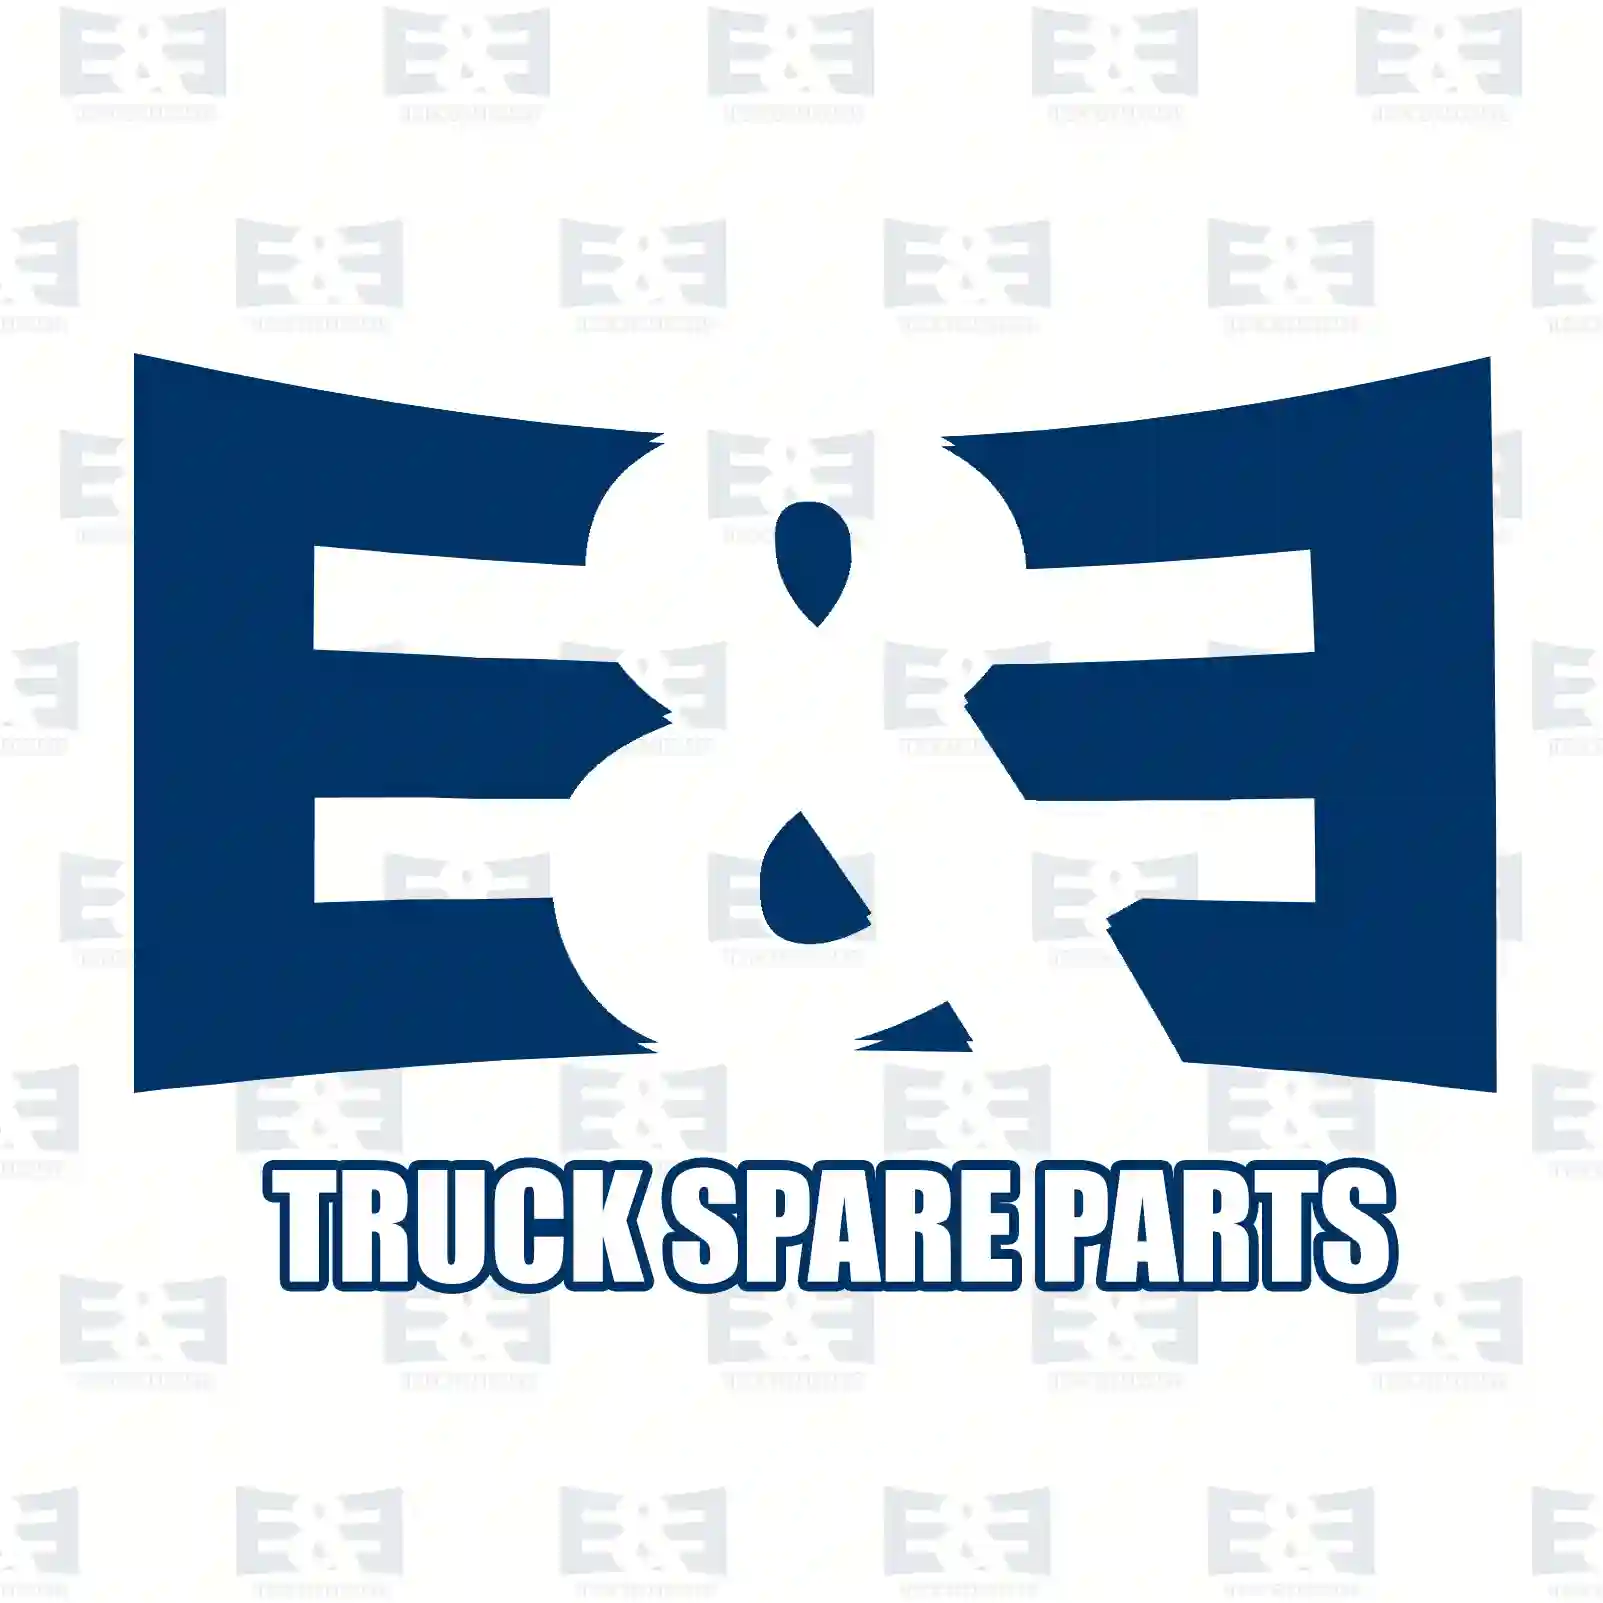 Wiper motor, 2E2289667, 1765185, 1922234, 1943657 ||  2E2289667 E&E Truck Spare Parts | Truck Spare Parts, Auotomotive Spare Parts Wiper motor, 2E2289667, 1765185, 1922234, 1943657 ||  2E2289667 E&E Truck Spare Parts | Truck Spare Parts, Auotomotive Spare Parts